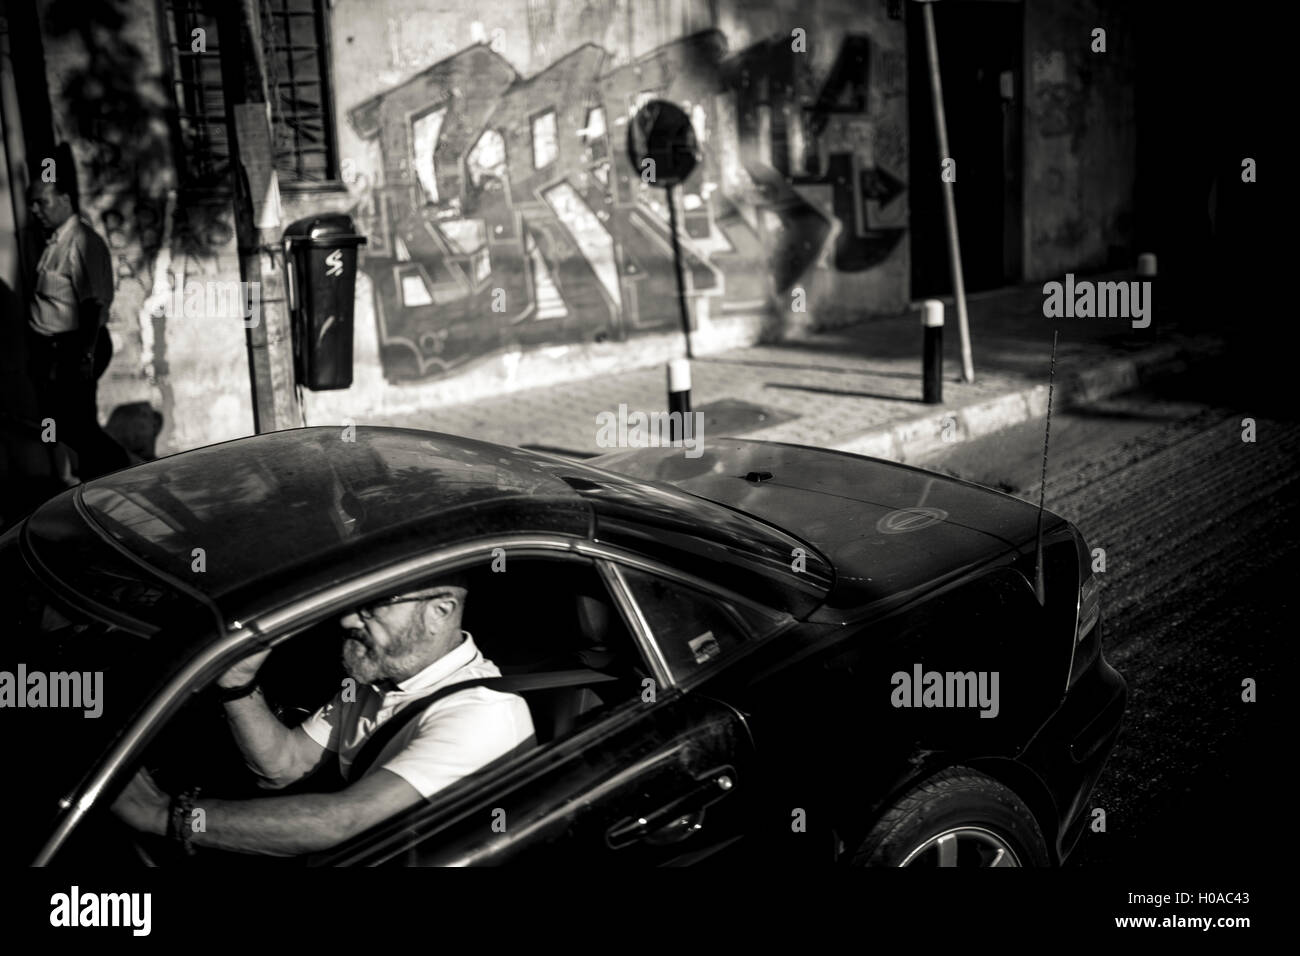 Les graffitis à Beyrouth - 01/02/2015 - Liban / Beyrouth - Sofil, Beyrouth, 2015. Une voiture passe par un graffiti par Barok libanais. - Bilal Tarabey / Le Pictorium Banque D'Images